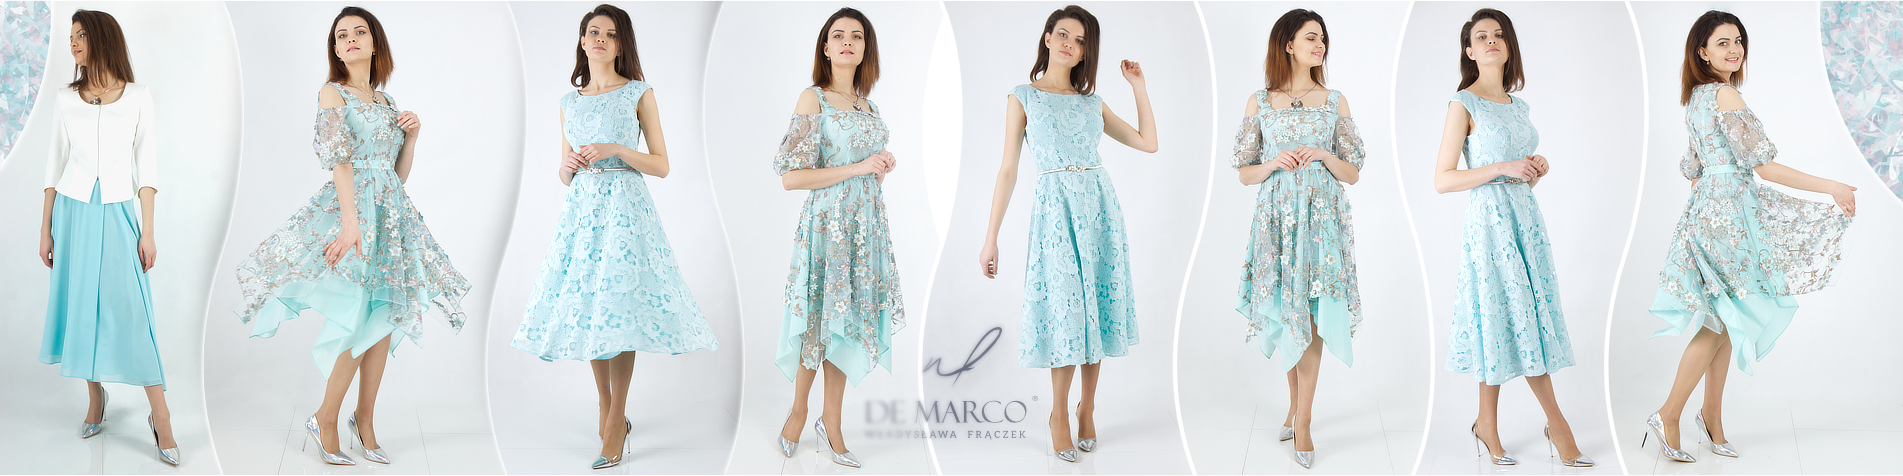 Najpiękniejsze sukienki na wesele De Marco - ekskluzywna odzież damska dla wymagających klientek